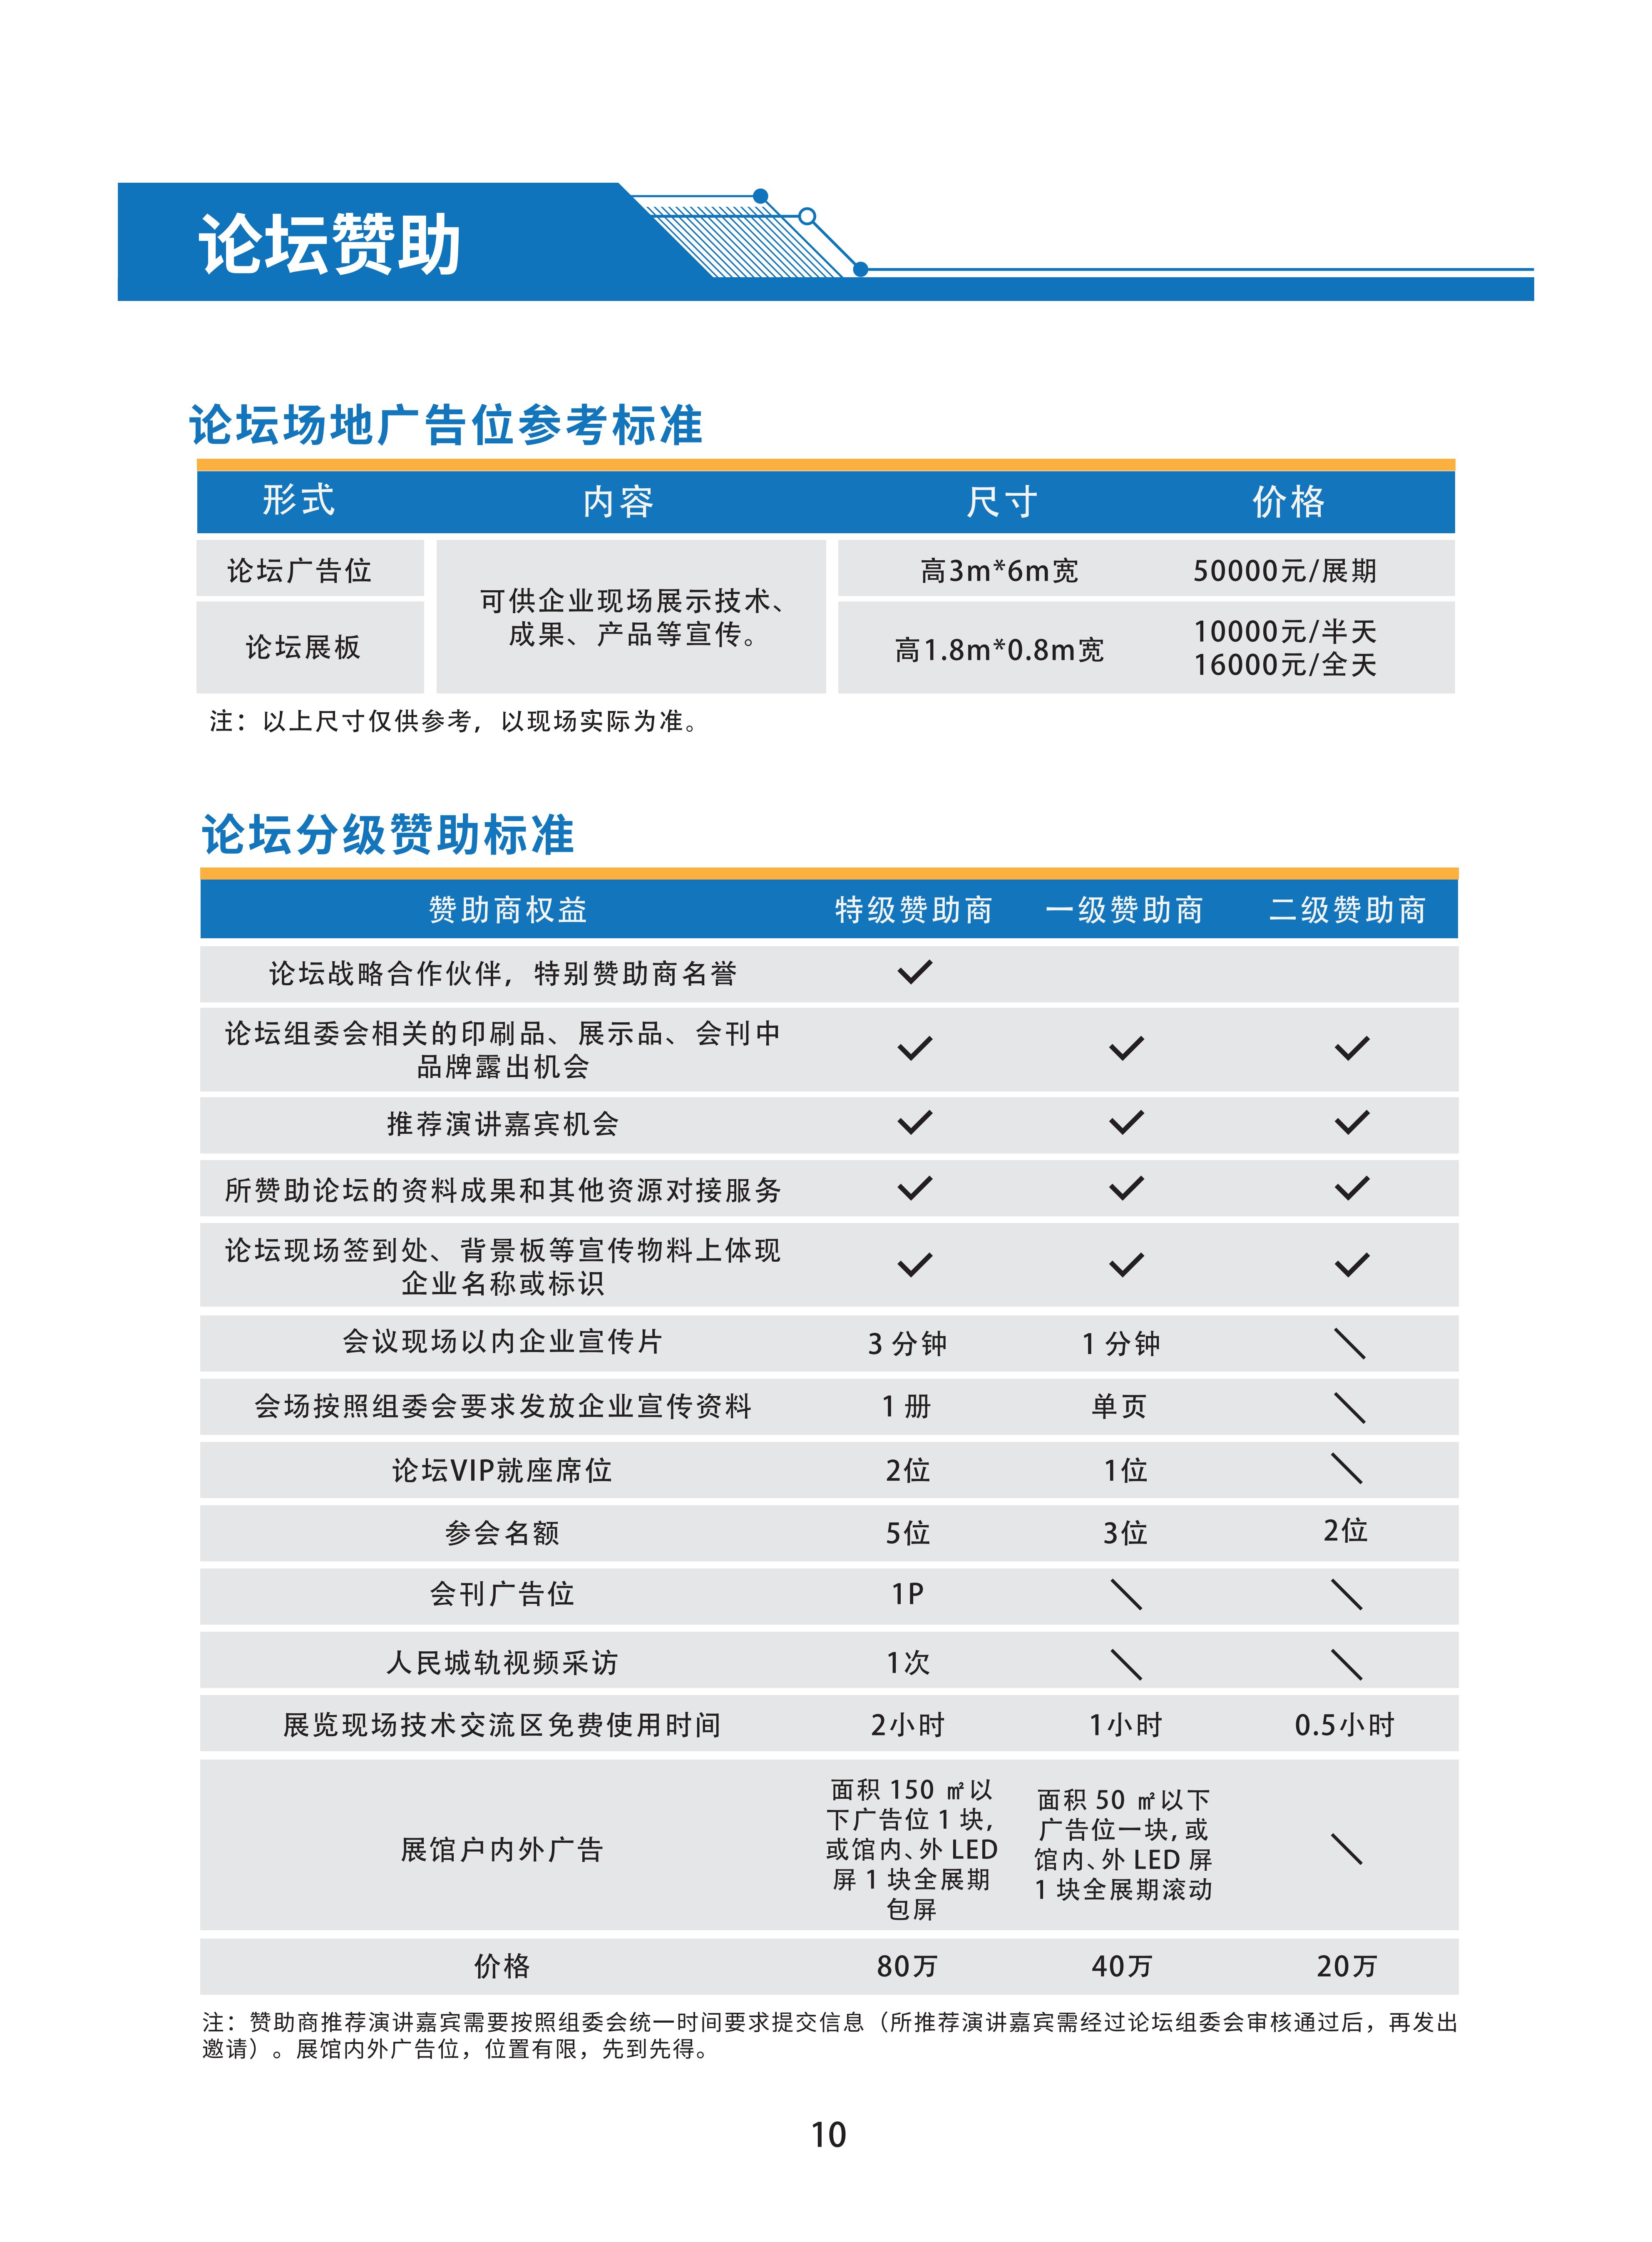 首届广州国际轨道交通展招商手册-20230306_12.jpg